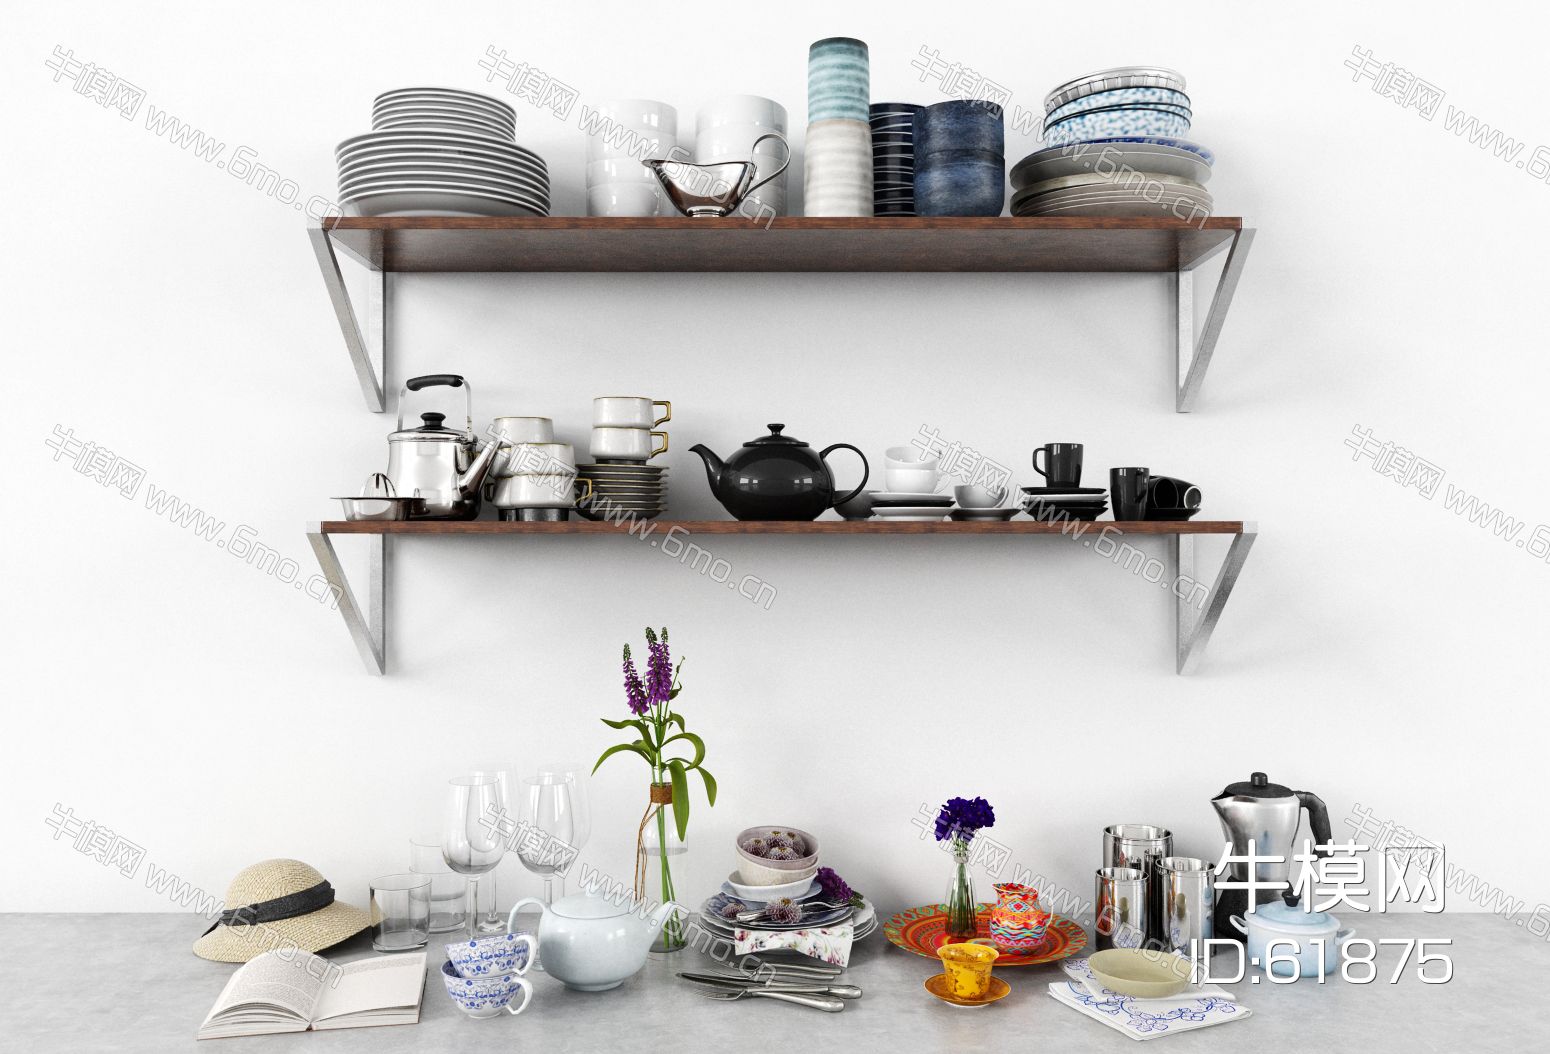 现代餐具，餐具，餐具组合，厨卫用品，厨卫摆件，厨具，厨房器具